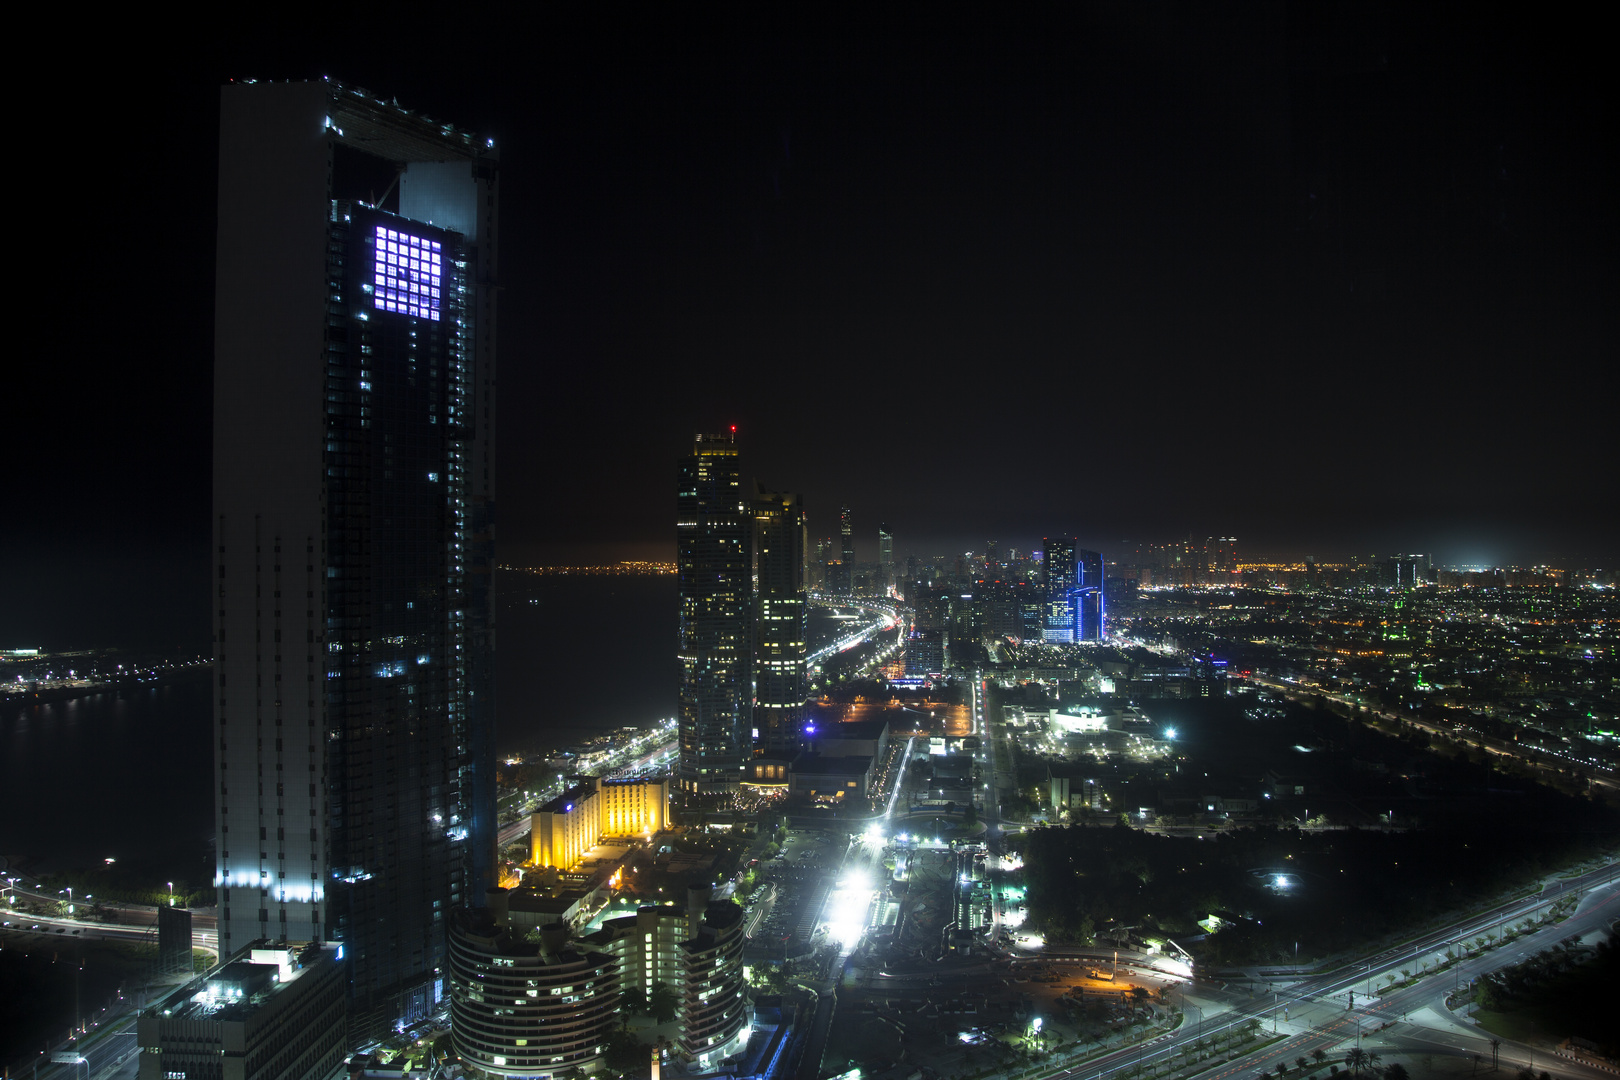 Abu Dhabi @ night 2014